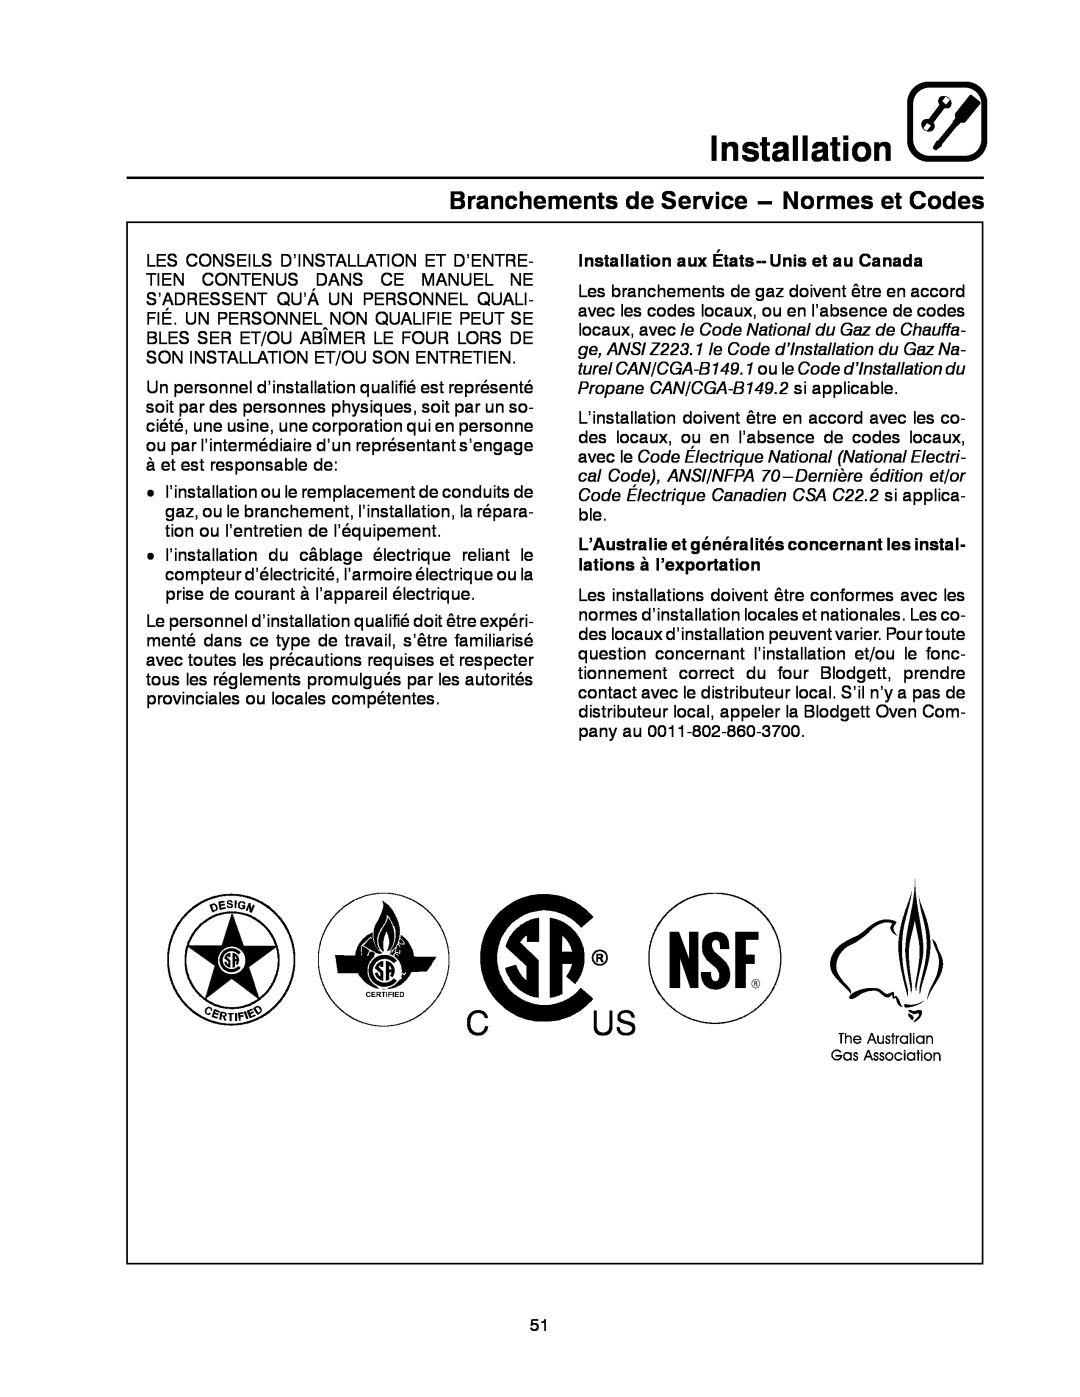 Blodgett DFG-50 manual Branchements de Service --- Normes et Codes, Installation aux États-- Unis et au Canada 